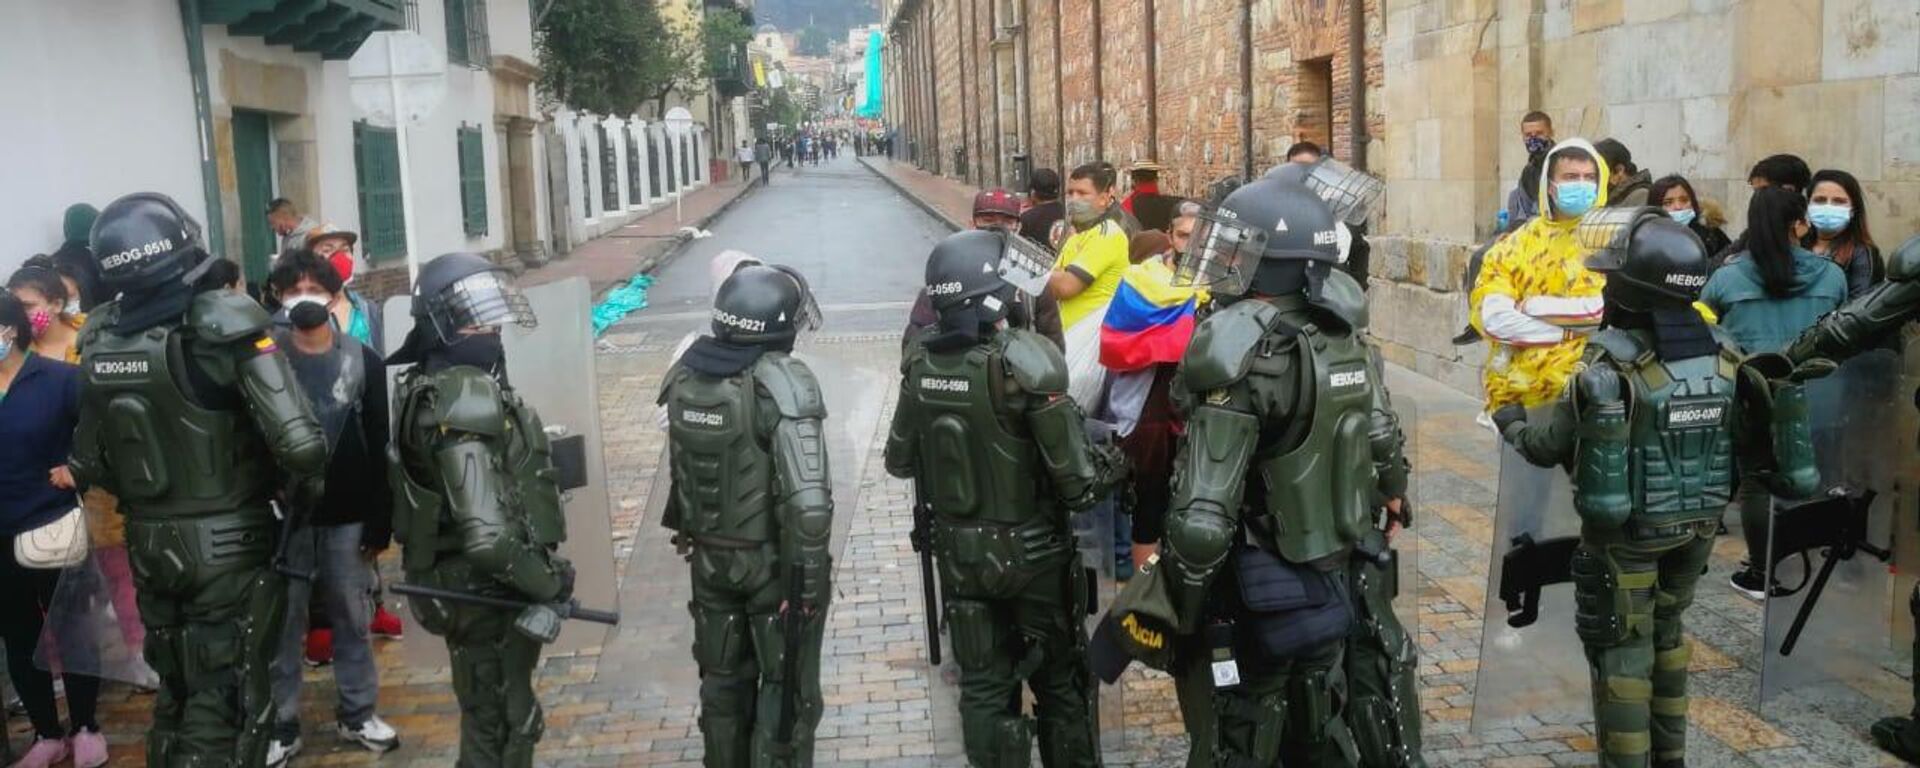 La Policía colombiana se desplegó en la jornada de protestas - Sputnik Mundo, 1920, 05.05.2021